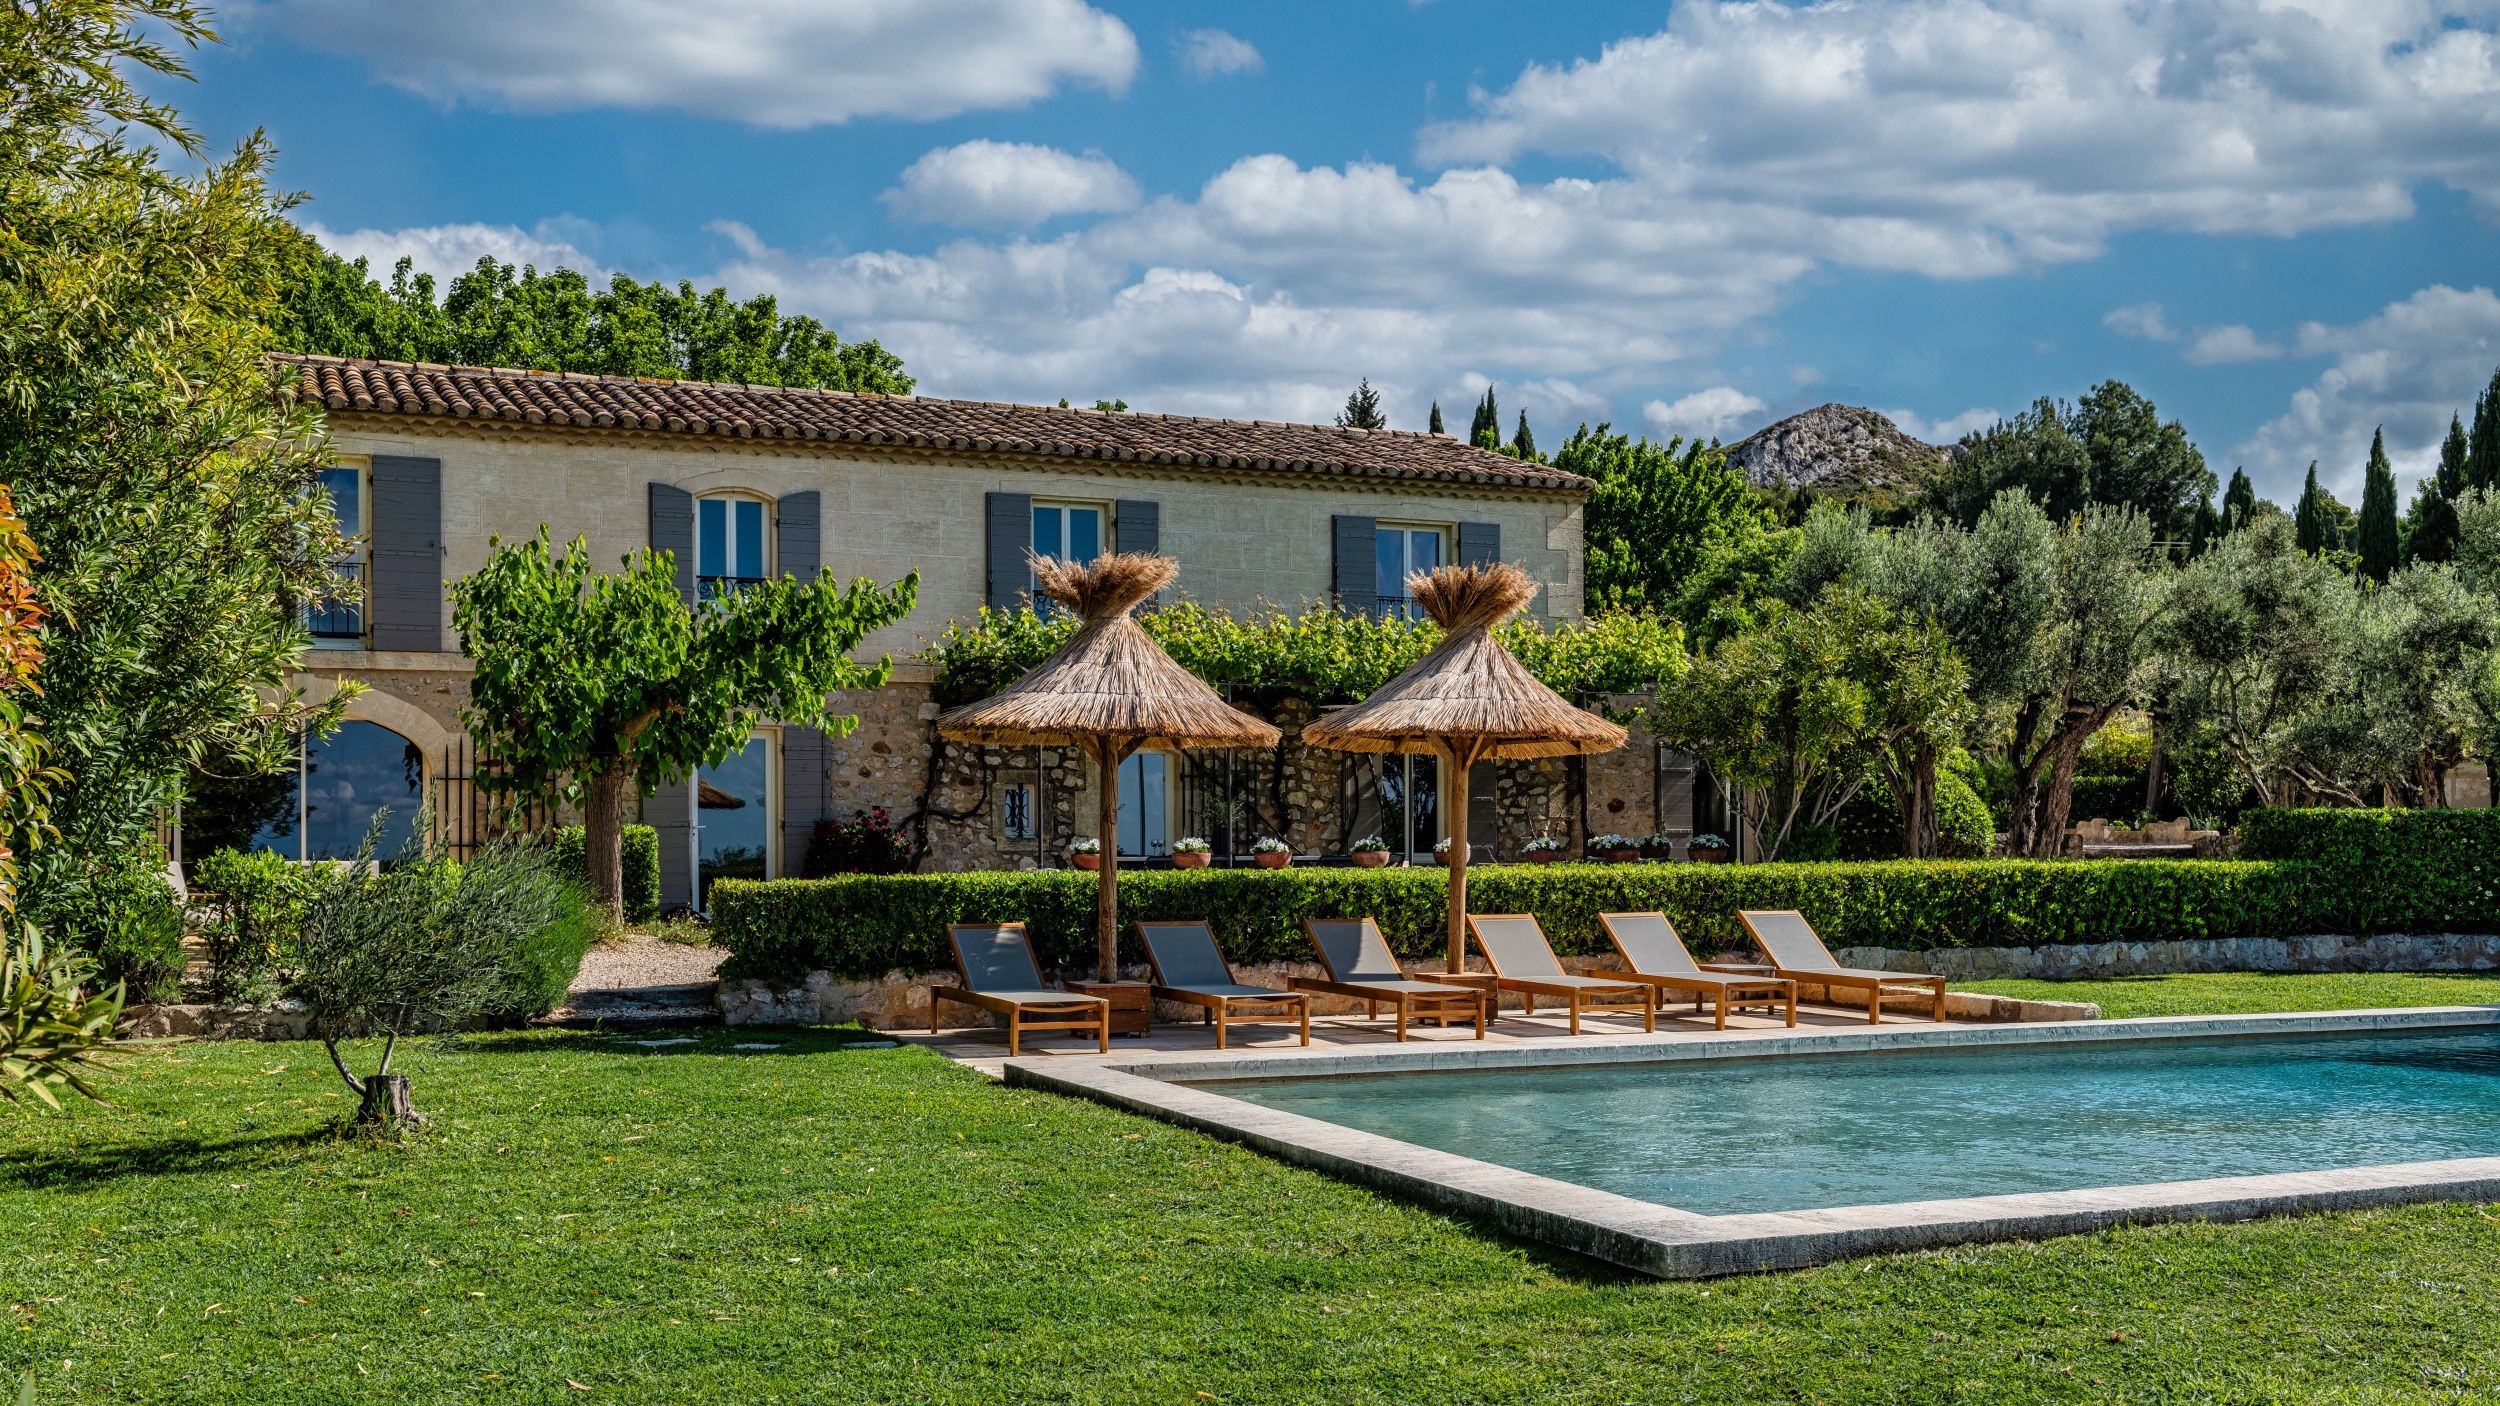 Location mas provençal - maison de charme dans les Alpilles avec piscine chauffée